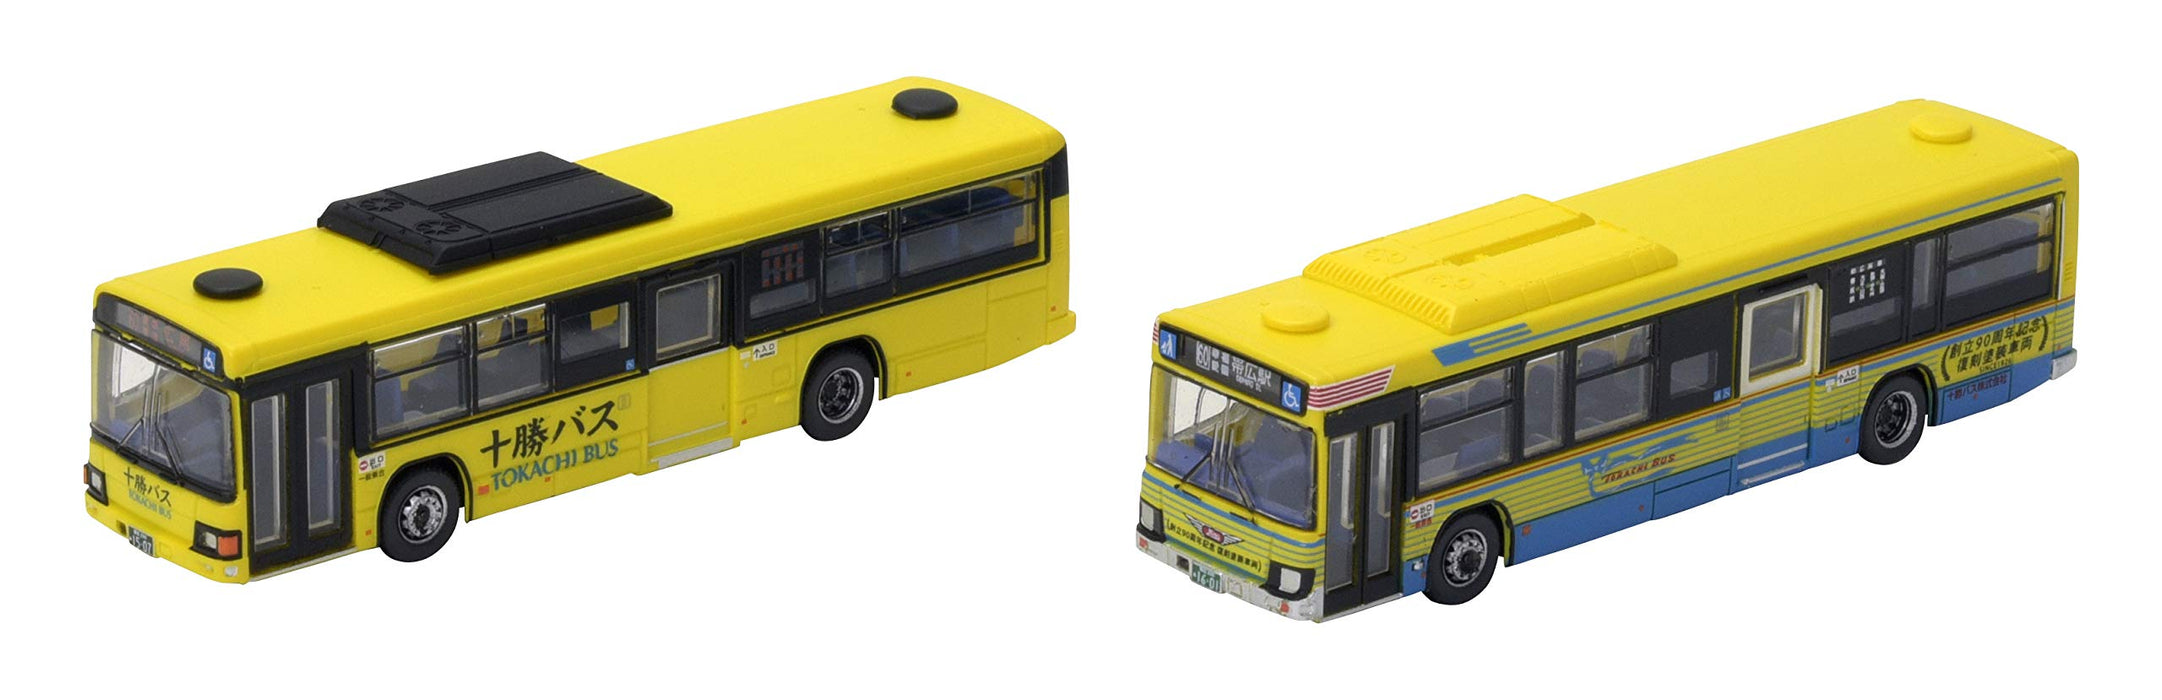 Tomytec Bus-Kollektion – Tokachi-Set, alte und neue Farben, limitierte Erstbestellung für Diorama-Zubehör